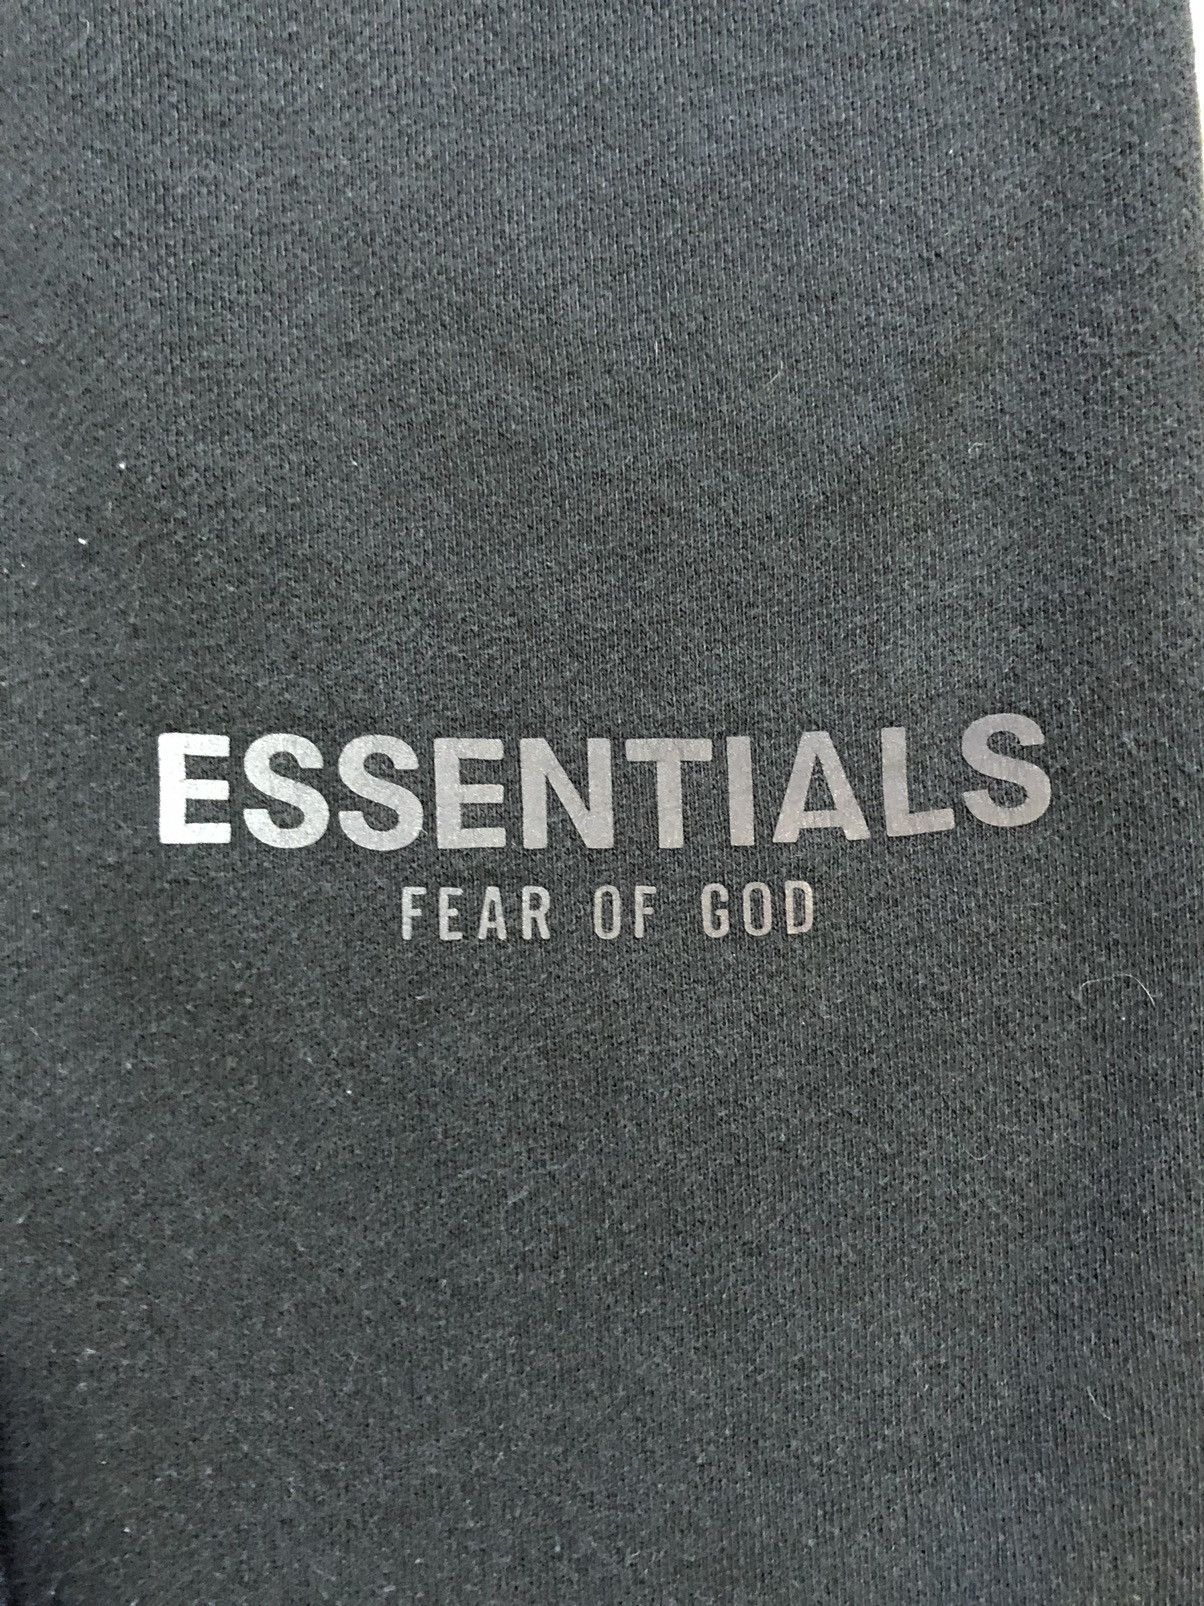 Fear of God Essentials FOG Joggers Size US 28 / EU 44 - 3 Thumbnail